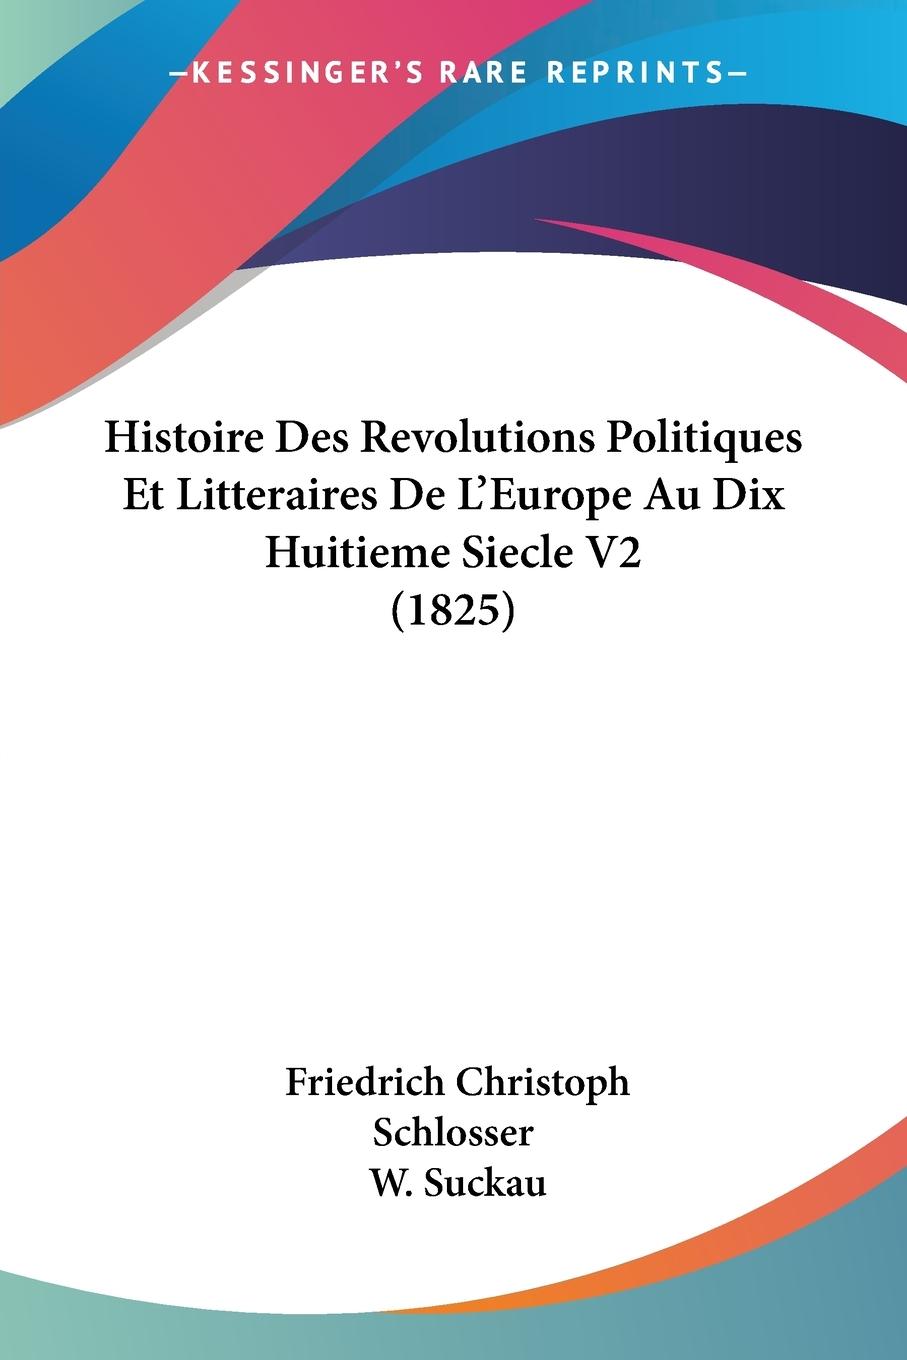 Histoire Des Revolutions Politiques Et Litteraires De L Europe Au Dix Huitieme Siecle V2 (1825) - Schlosser, Friedrich Christoph